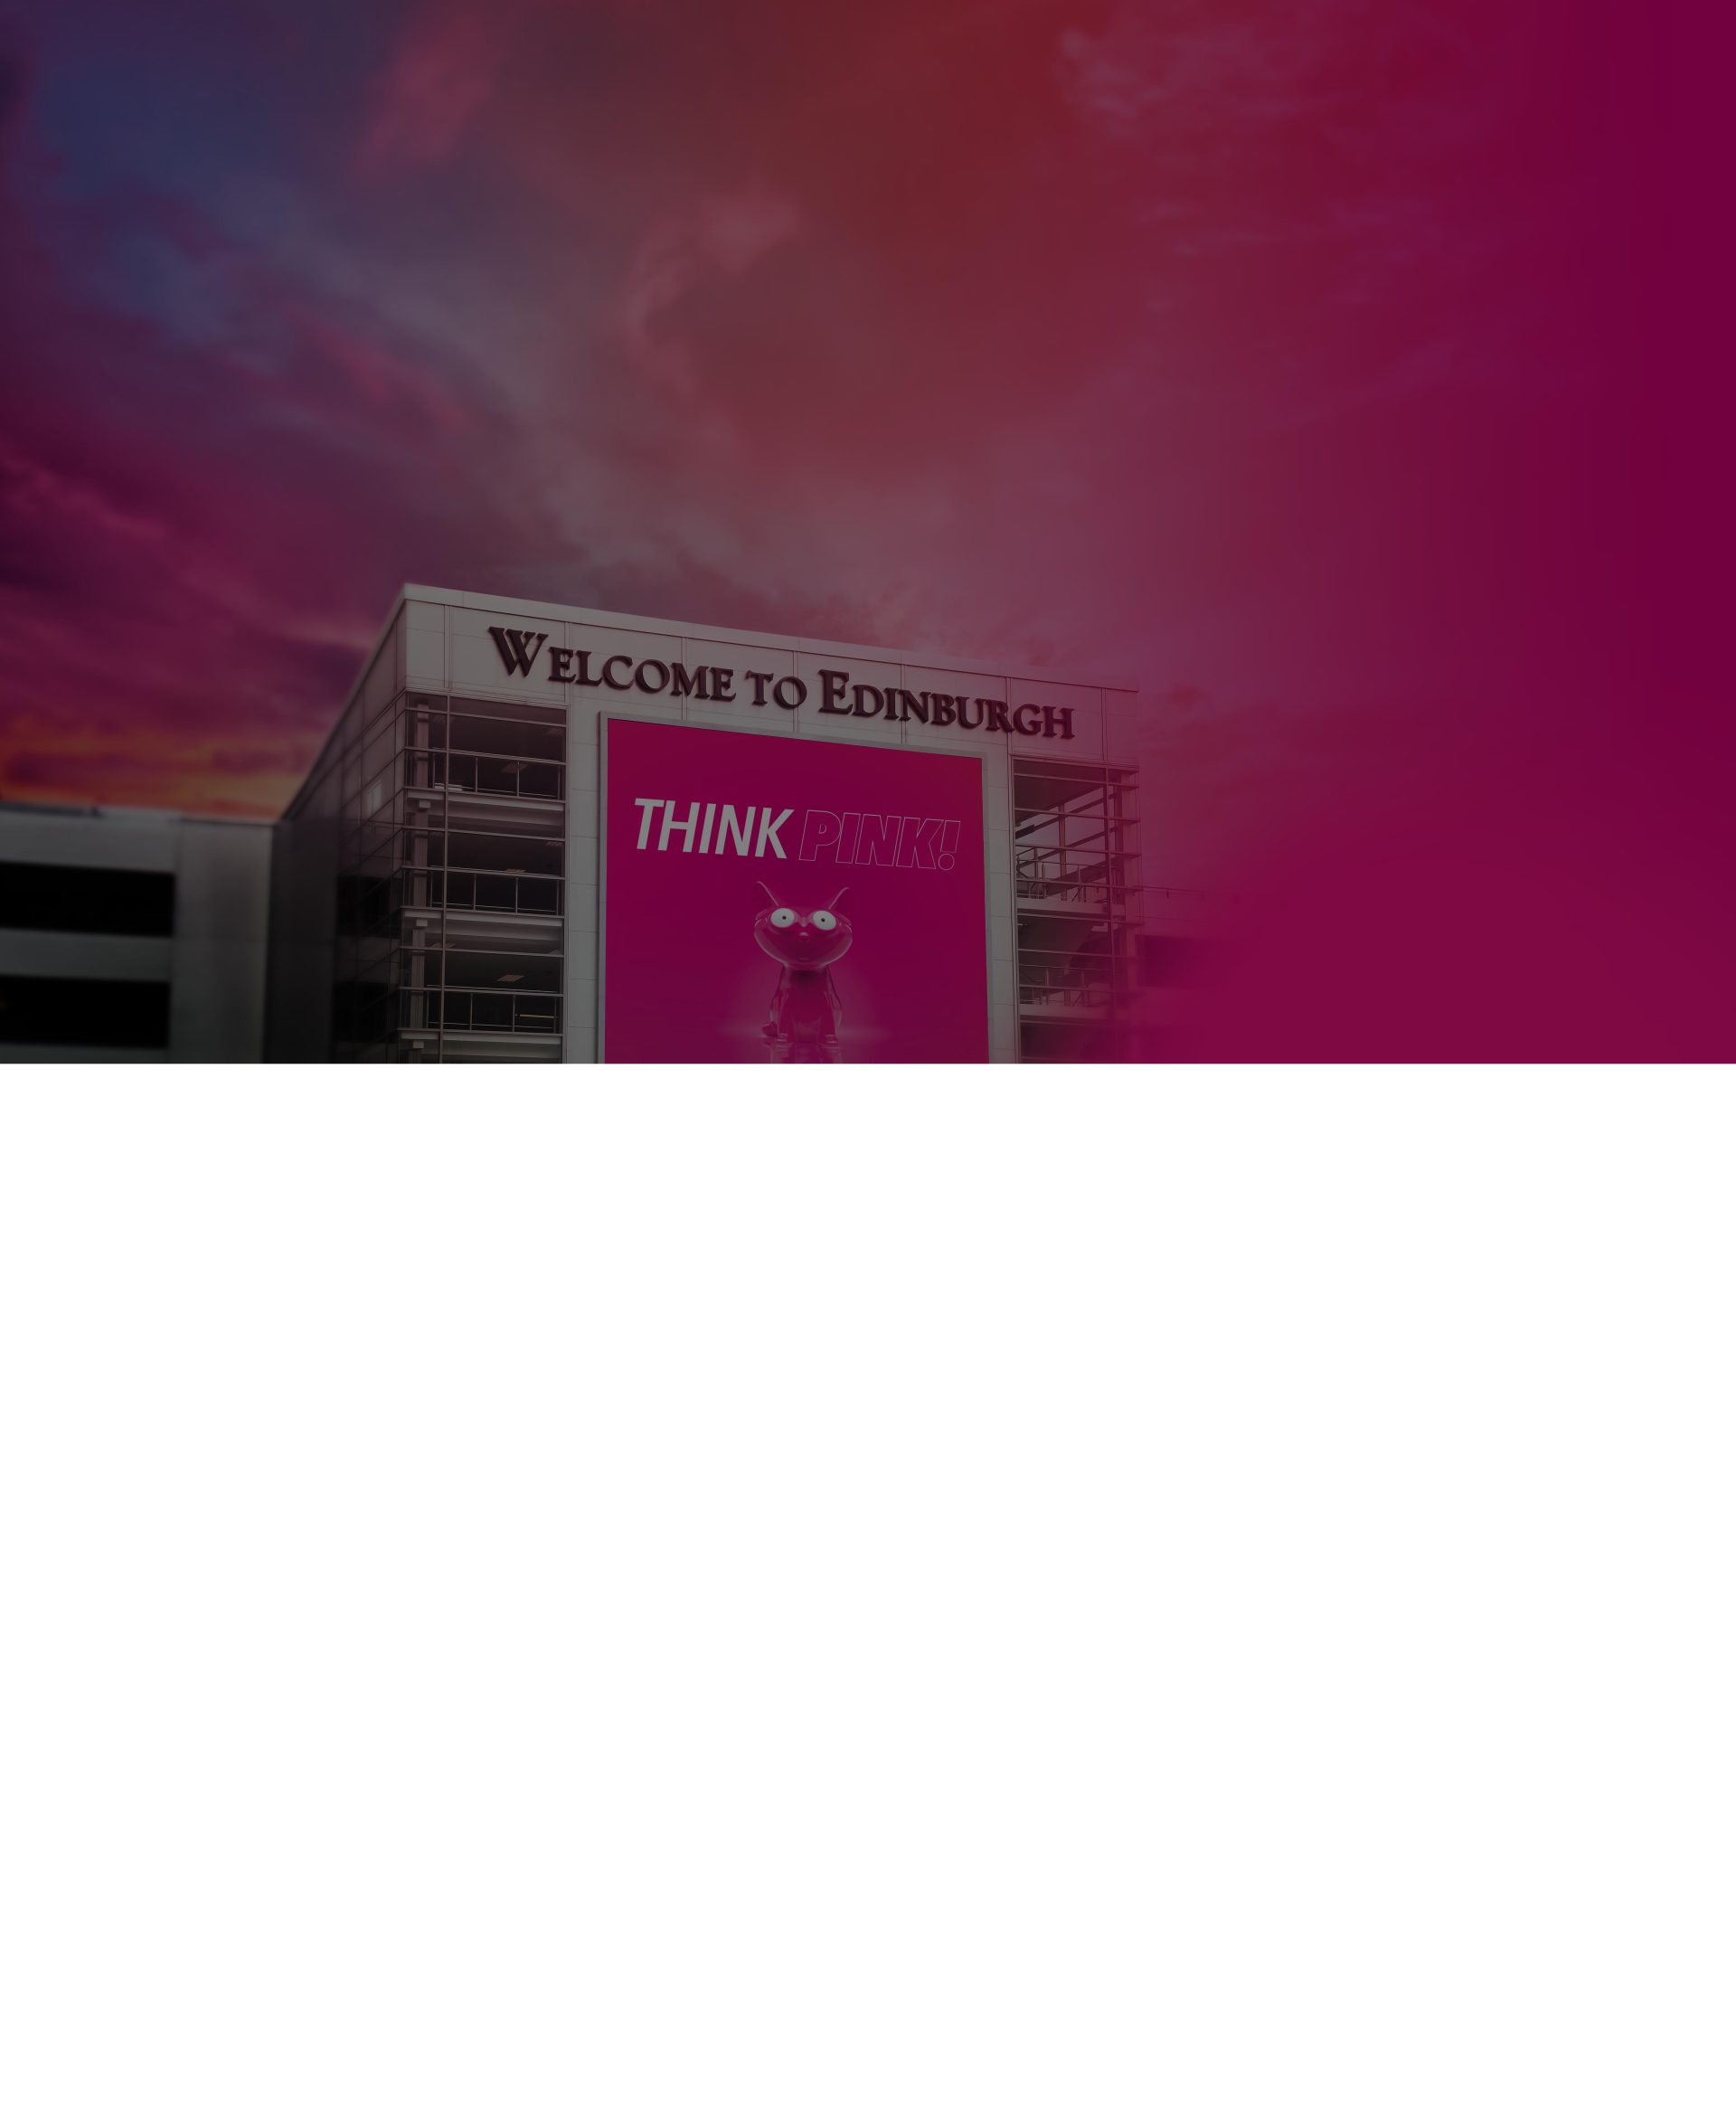 Das Bild zeigt eine riesige pinke Bannerwerbung an einer Hausfassade. Auf dem Banner ist ein pinker Werbeartikel mit der Headline Think Pink zu sehen.